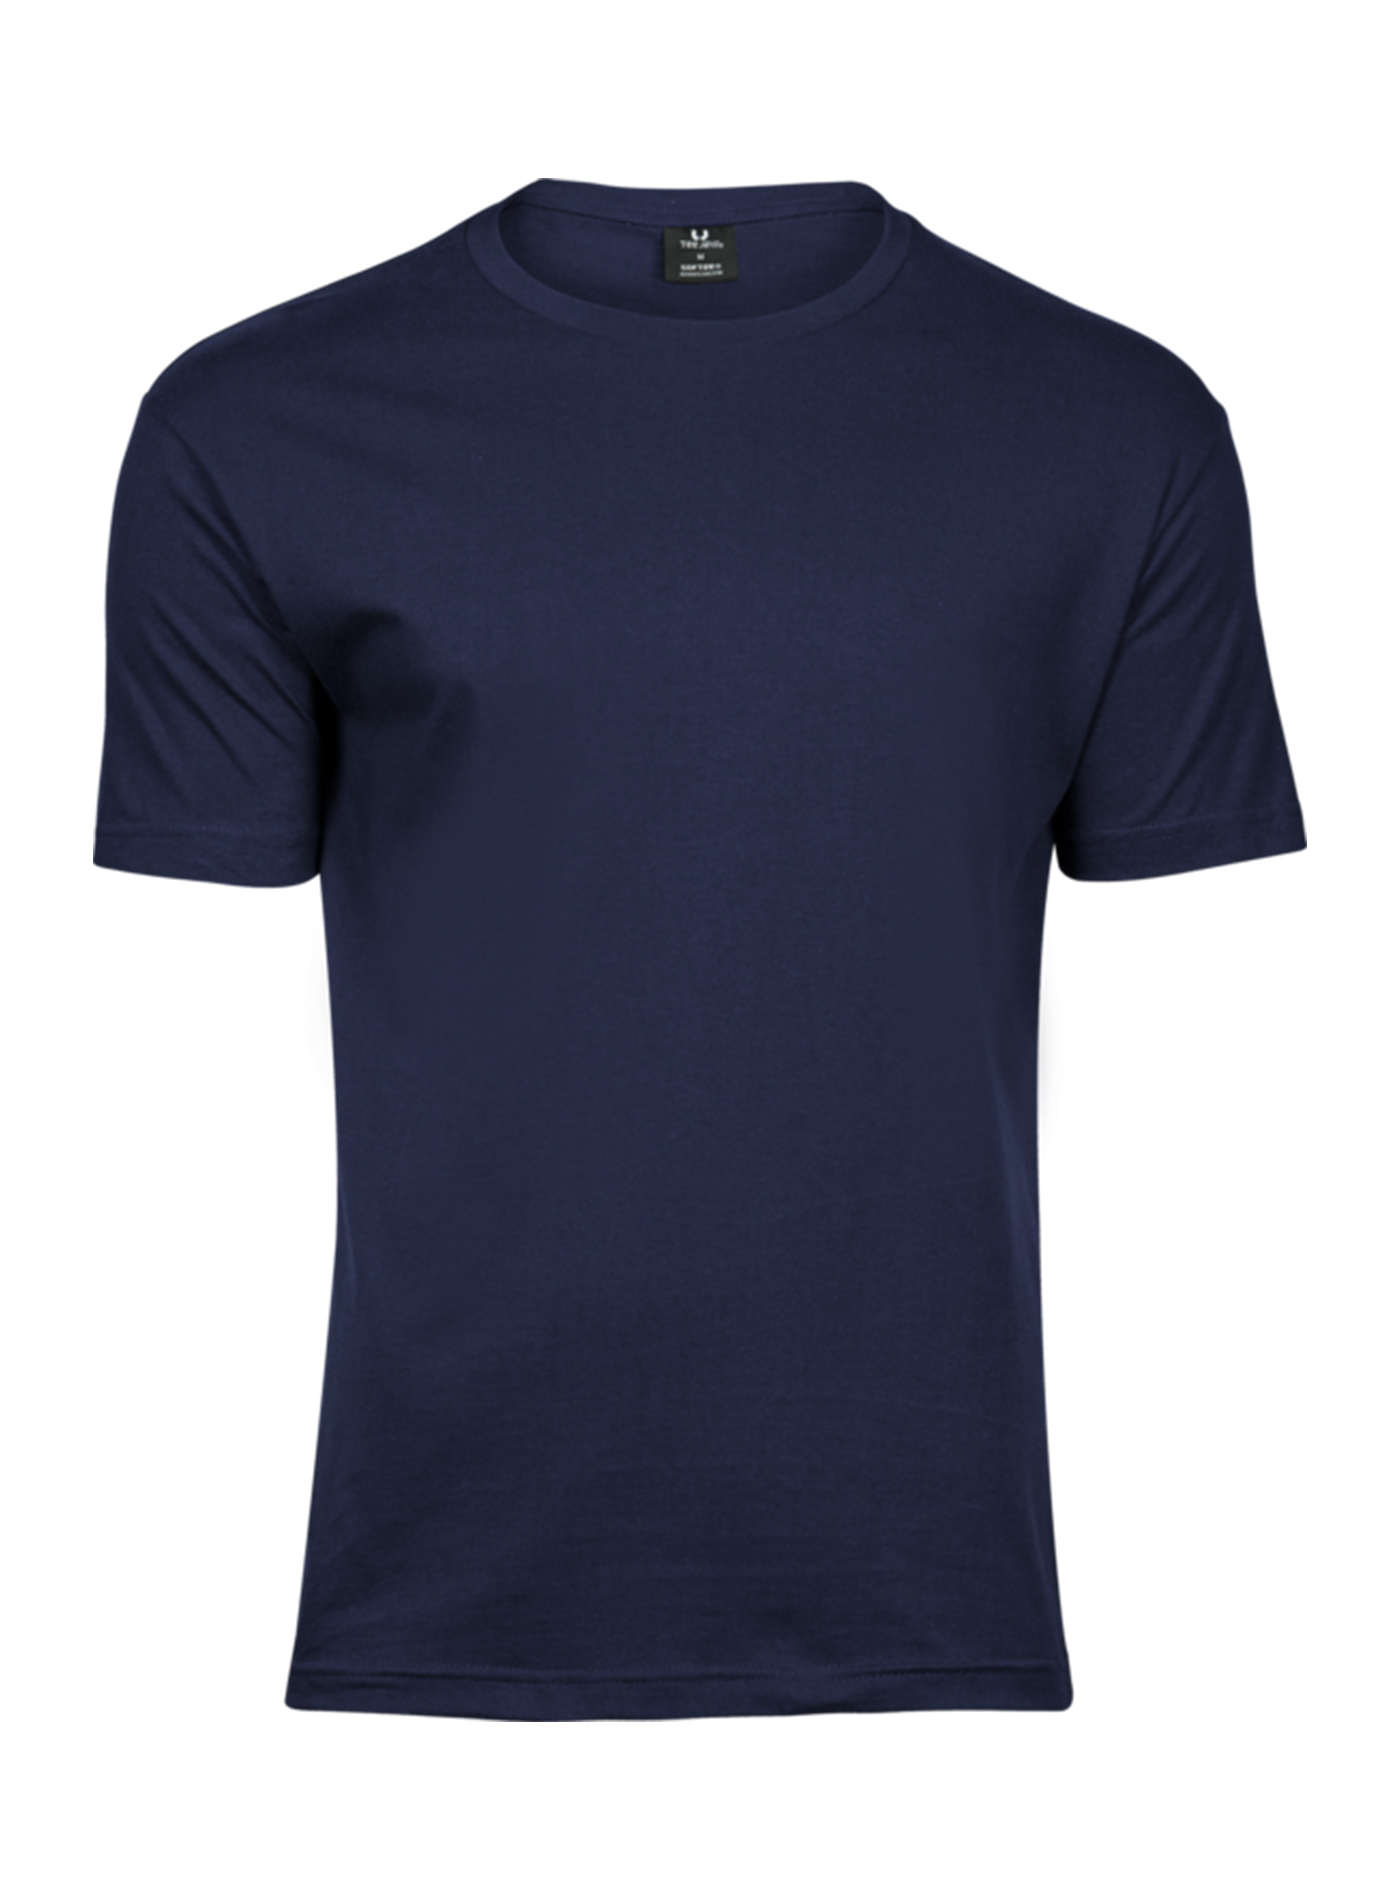 Pánské tričko Fashion Tee Jays - Námořní modrá M